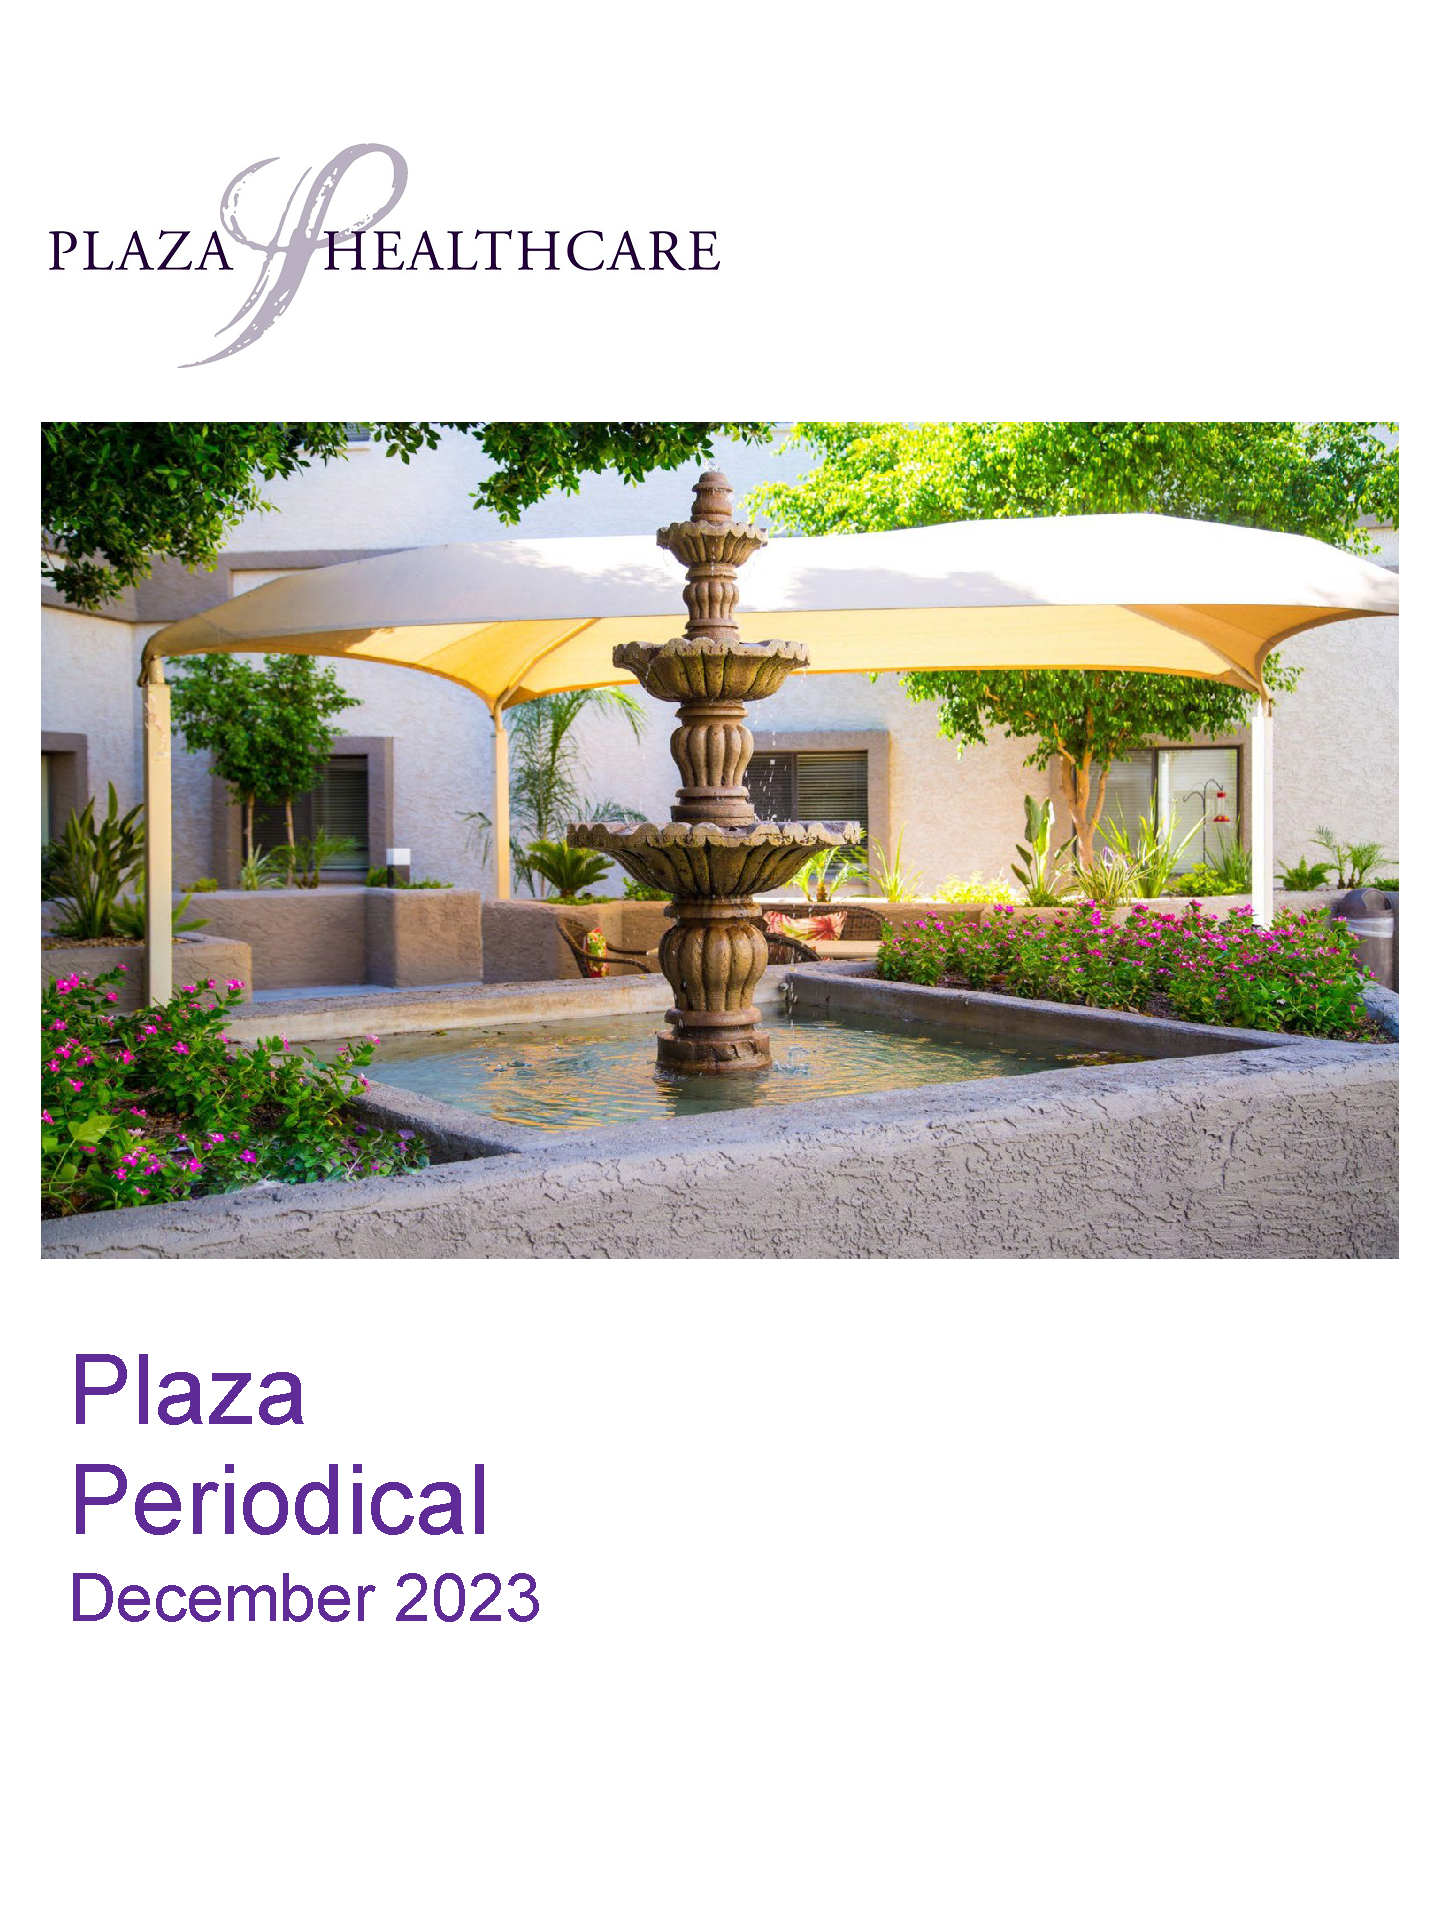 Periodical | Plaza Healthcare